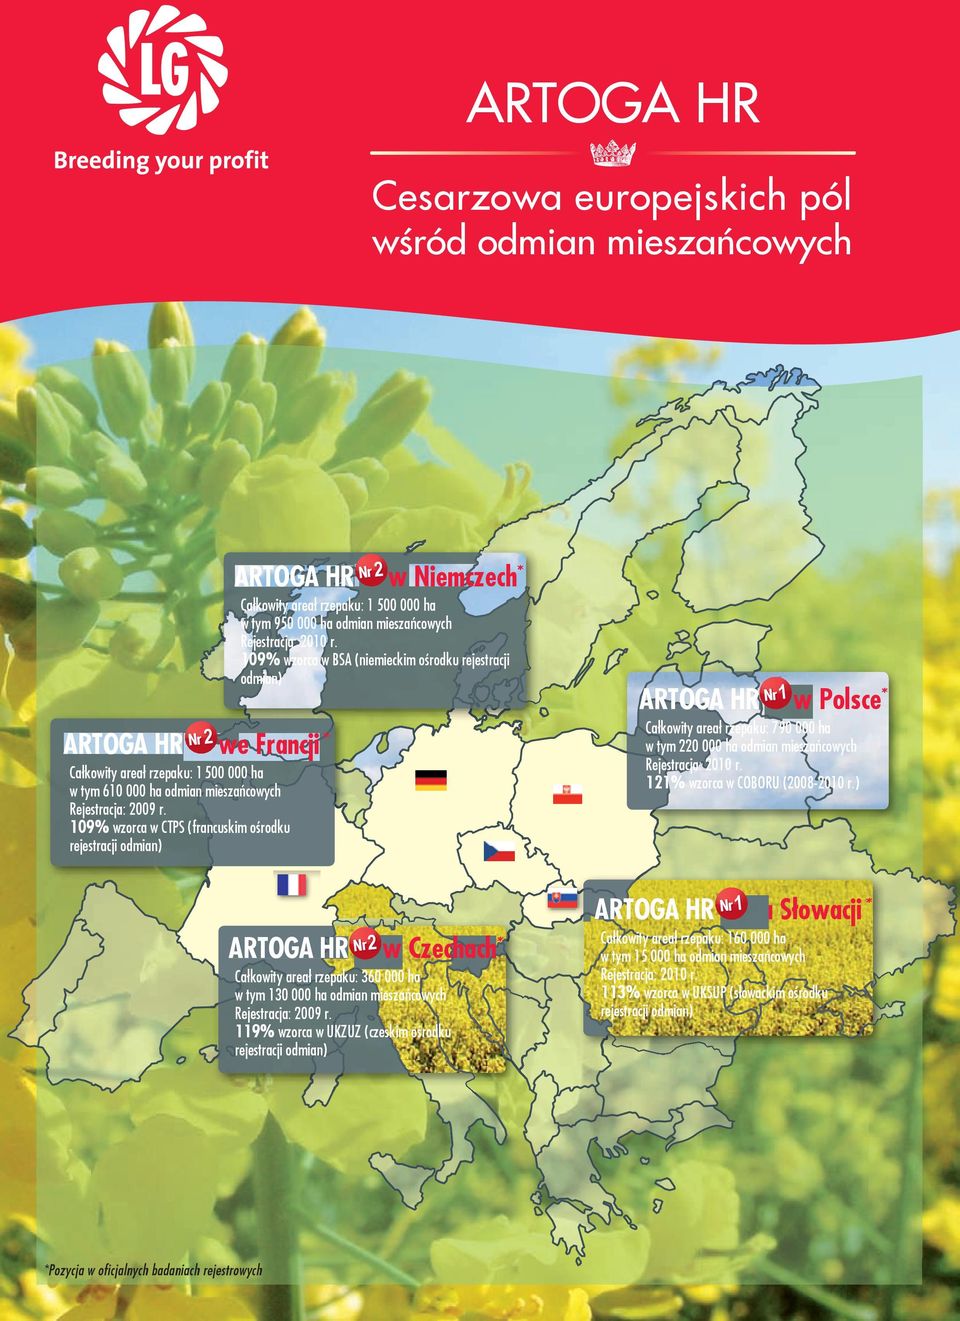 109% wzorca w CTPS (francuskim ośrodku rejestracji odmian) ARTOGA hr Nr 1 w Polsce* Całkowity areał rzepaku: 790 000 ha w tym 220 000 ha odmian mieszańcowych Rejestracja: 2010 r.